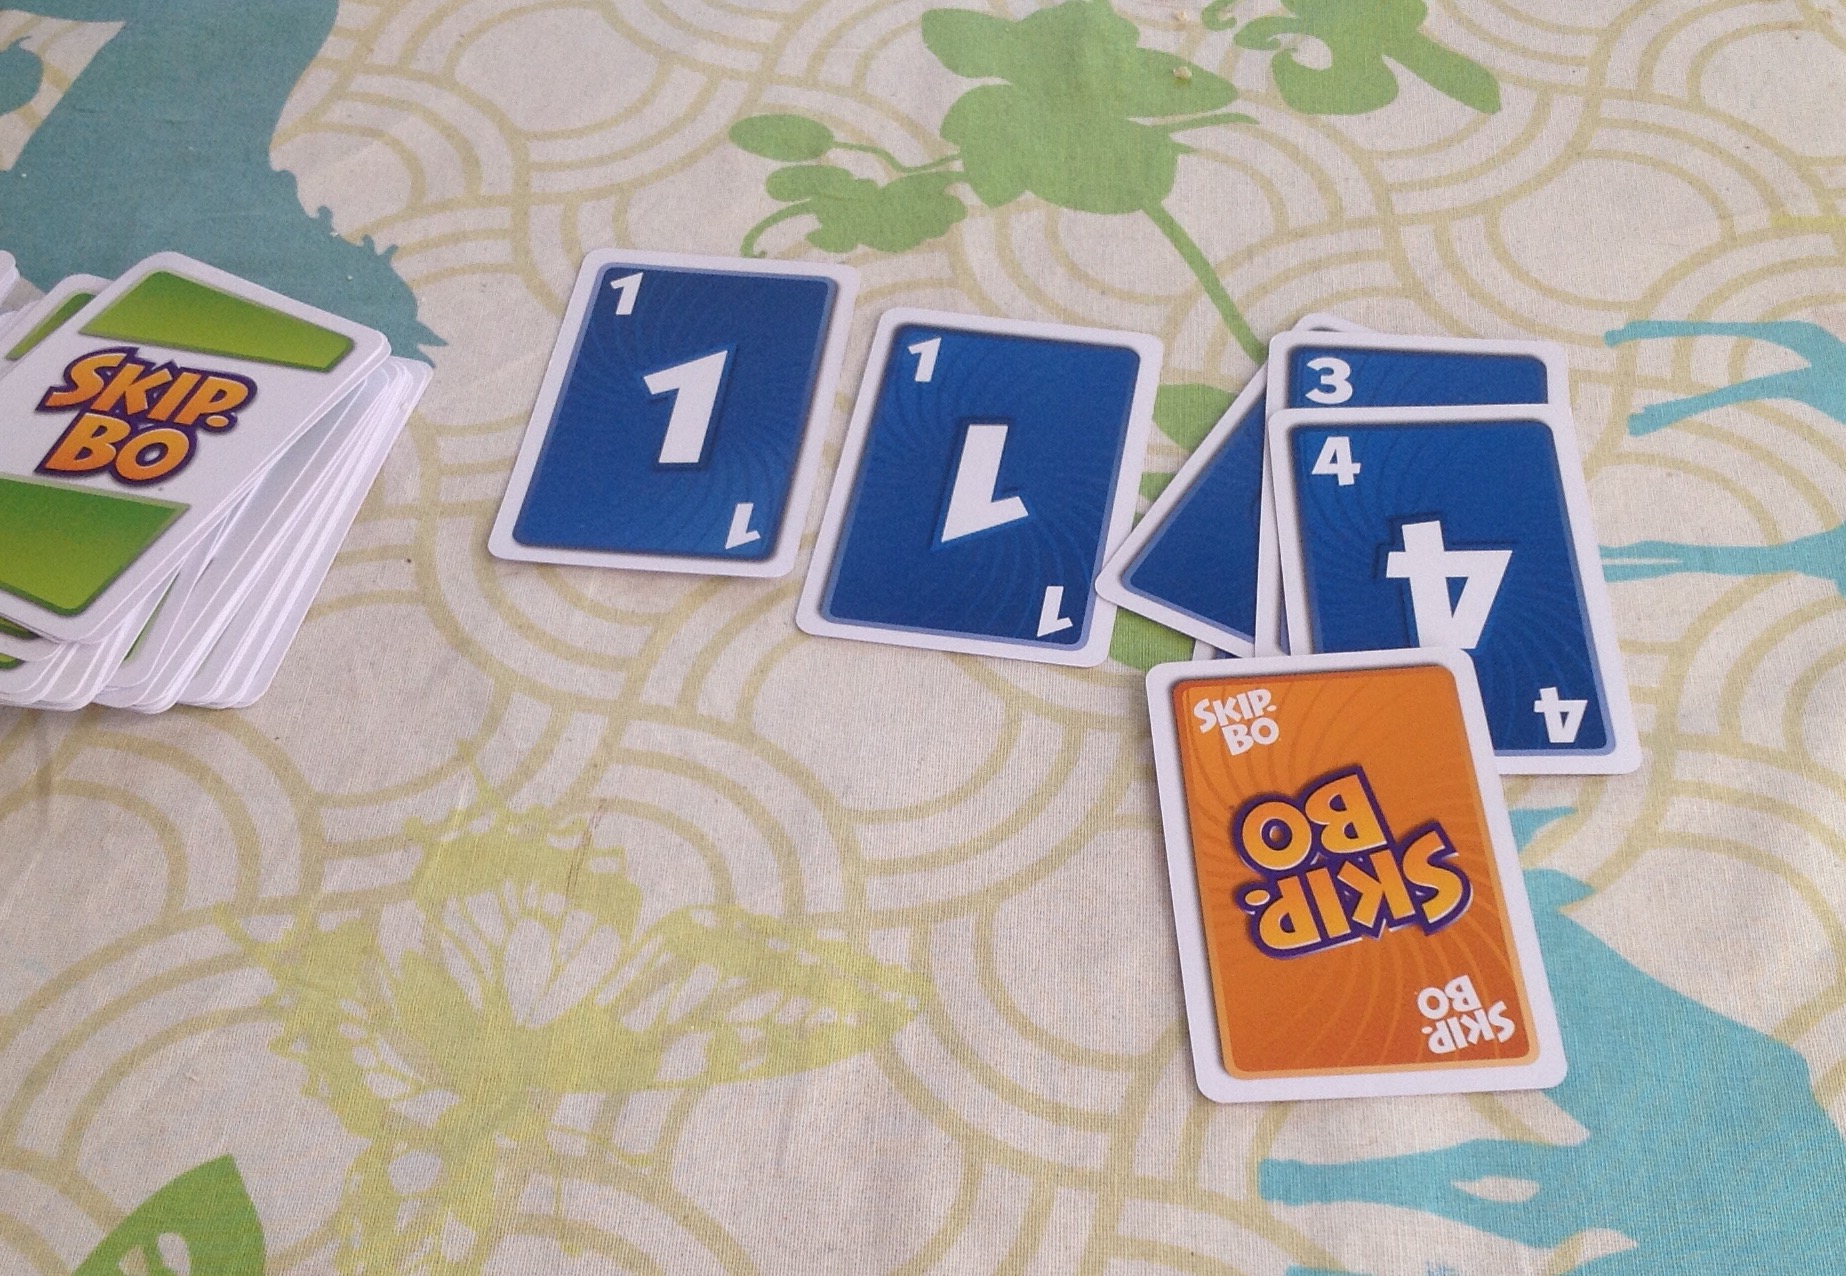 Skip-Bo-kort er jokere, der kan være et hvilken som helst andet kort i spillet. Her er det en femmer.